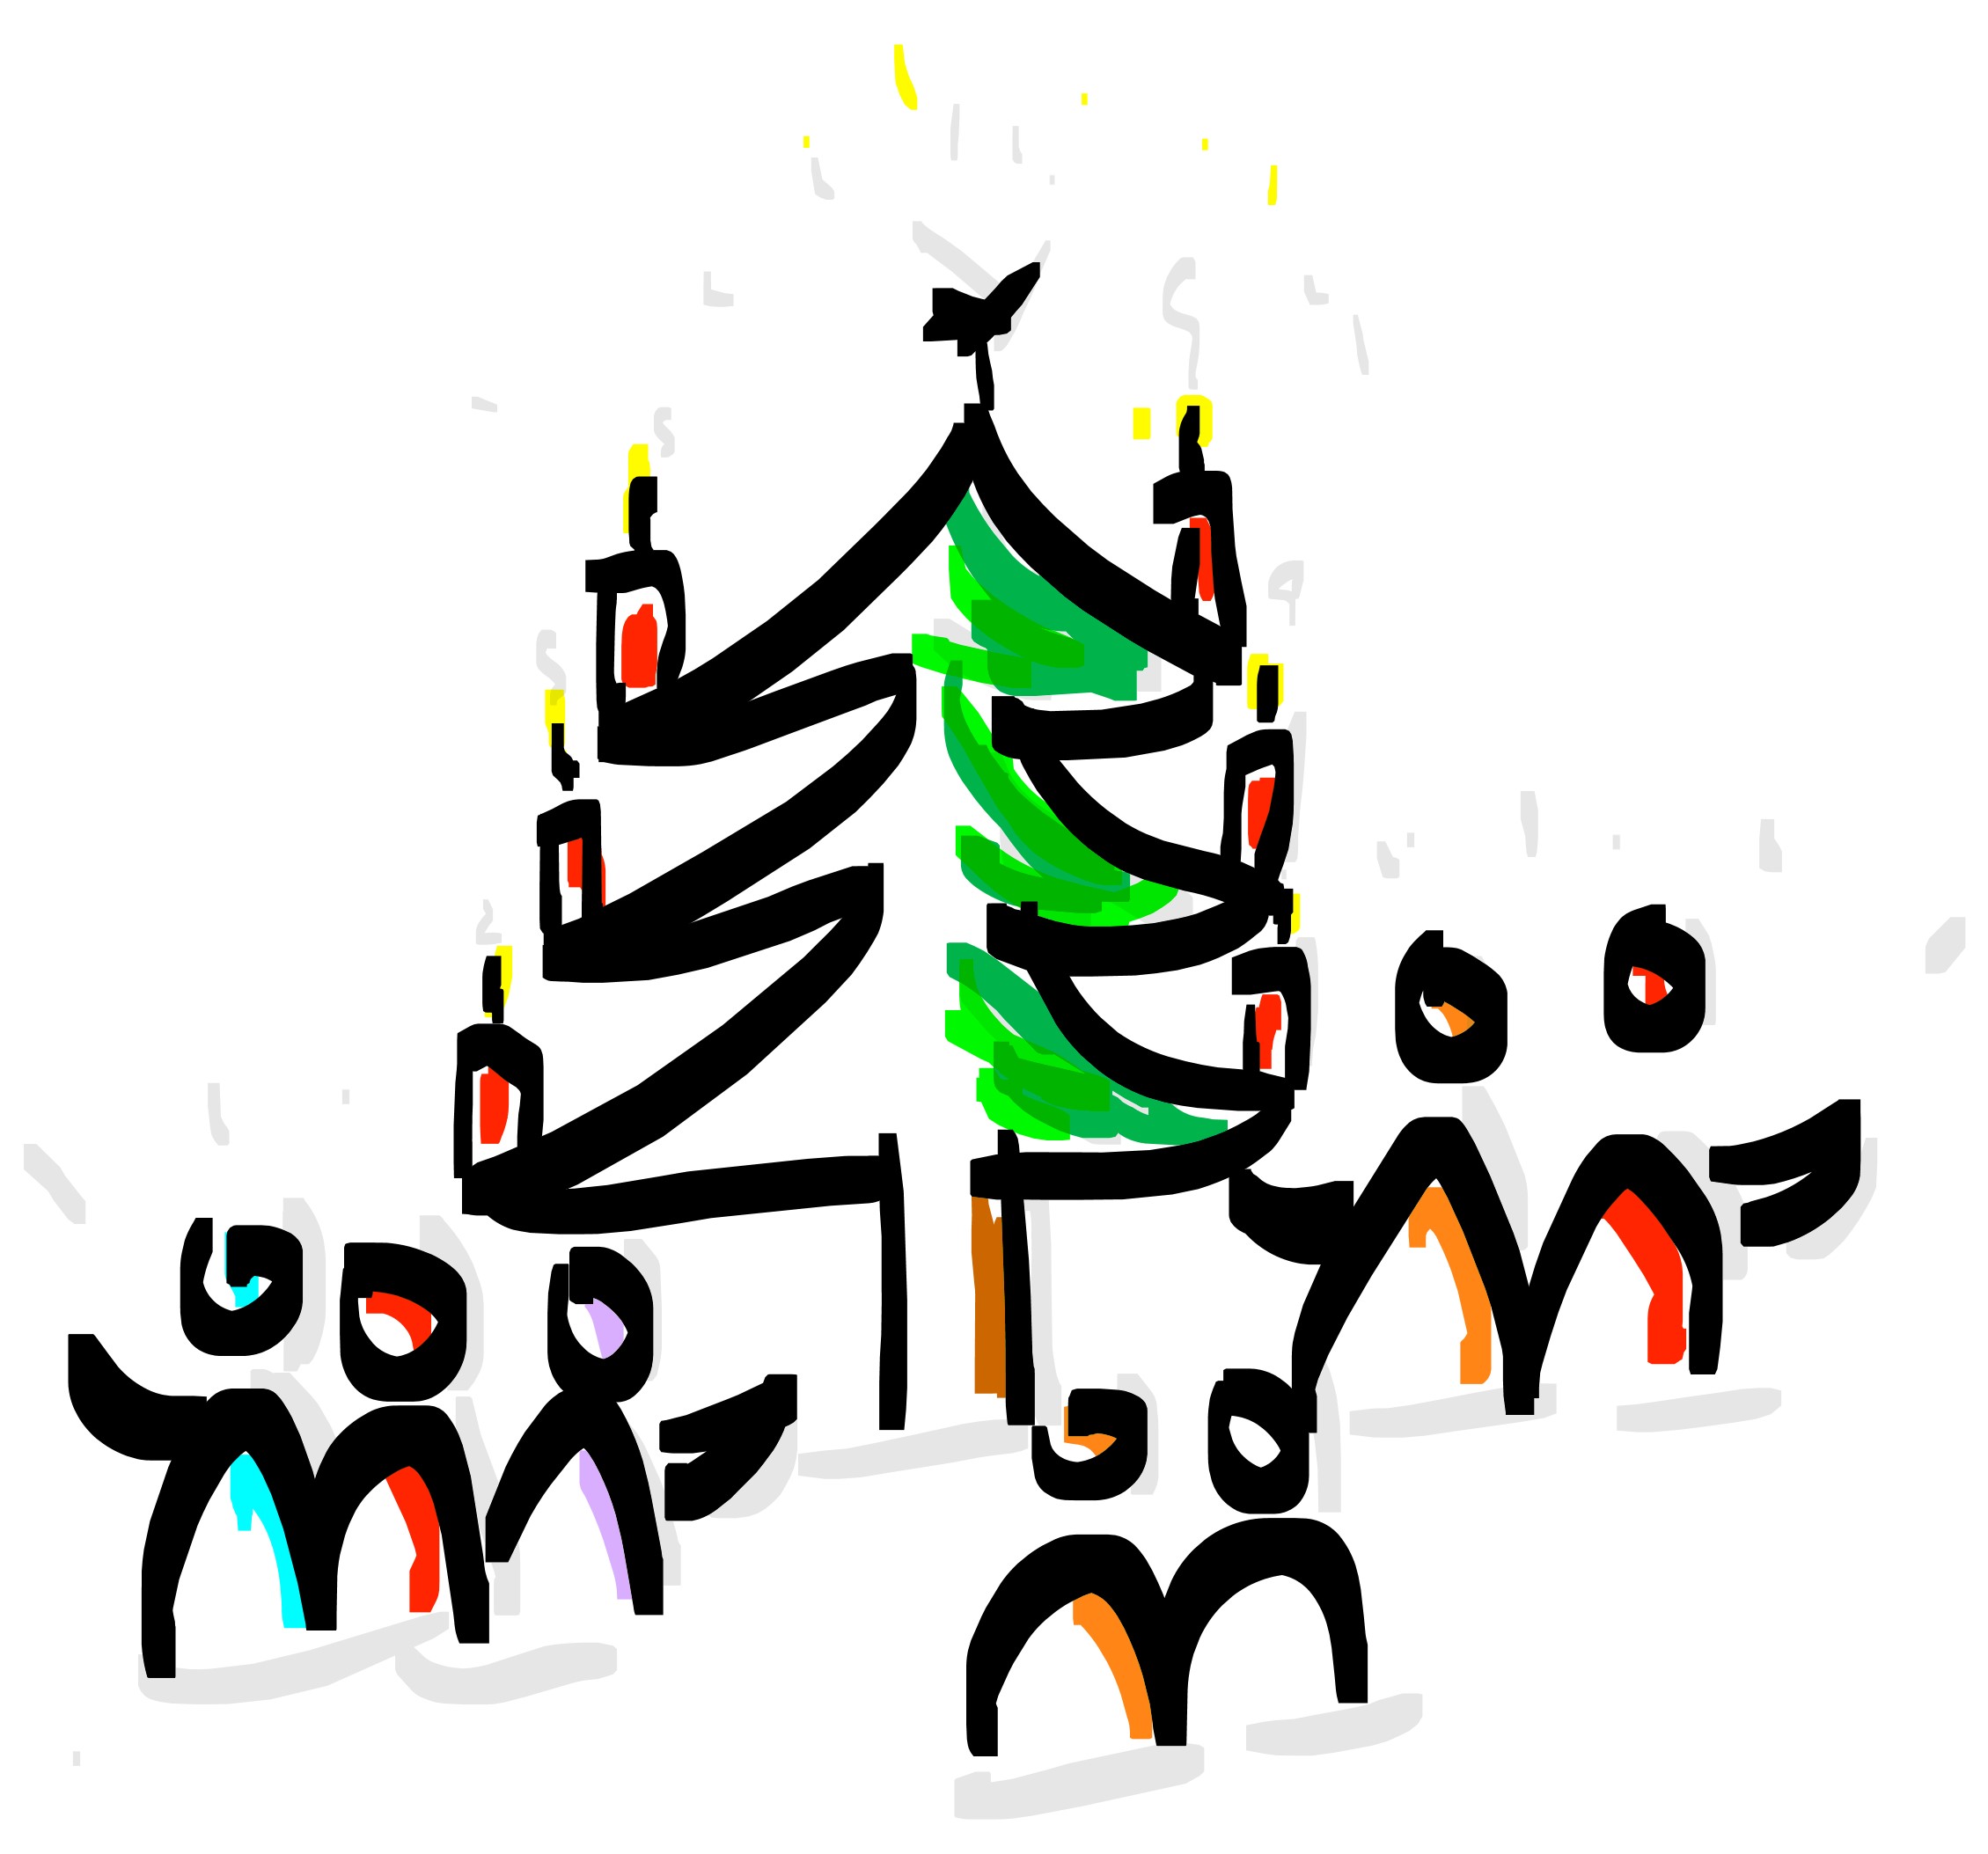 Zeichnung: Weihnachtsbaum mit Figuren drumherum